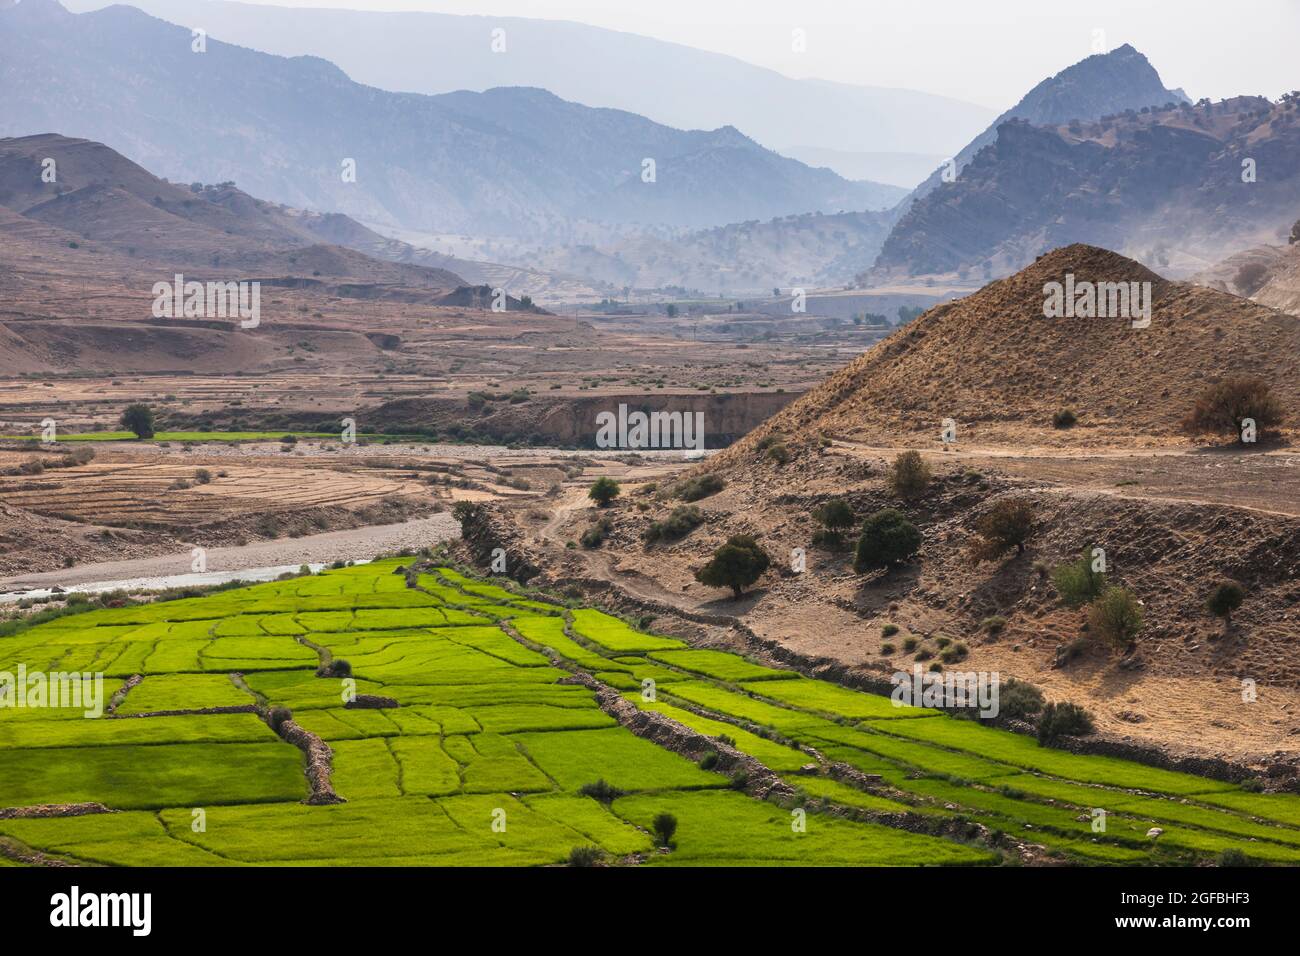 Rivière bordeaux et champ de riz dans les montagnes Zagros, route 63 près de Kalat, Kohgiluyeh et province de Boyer-Ahmad, Iran, Perse, Asie occidentale, Asie Banque D'Images